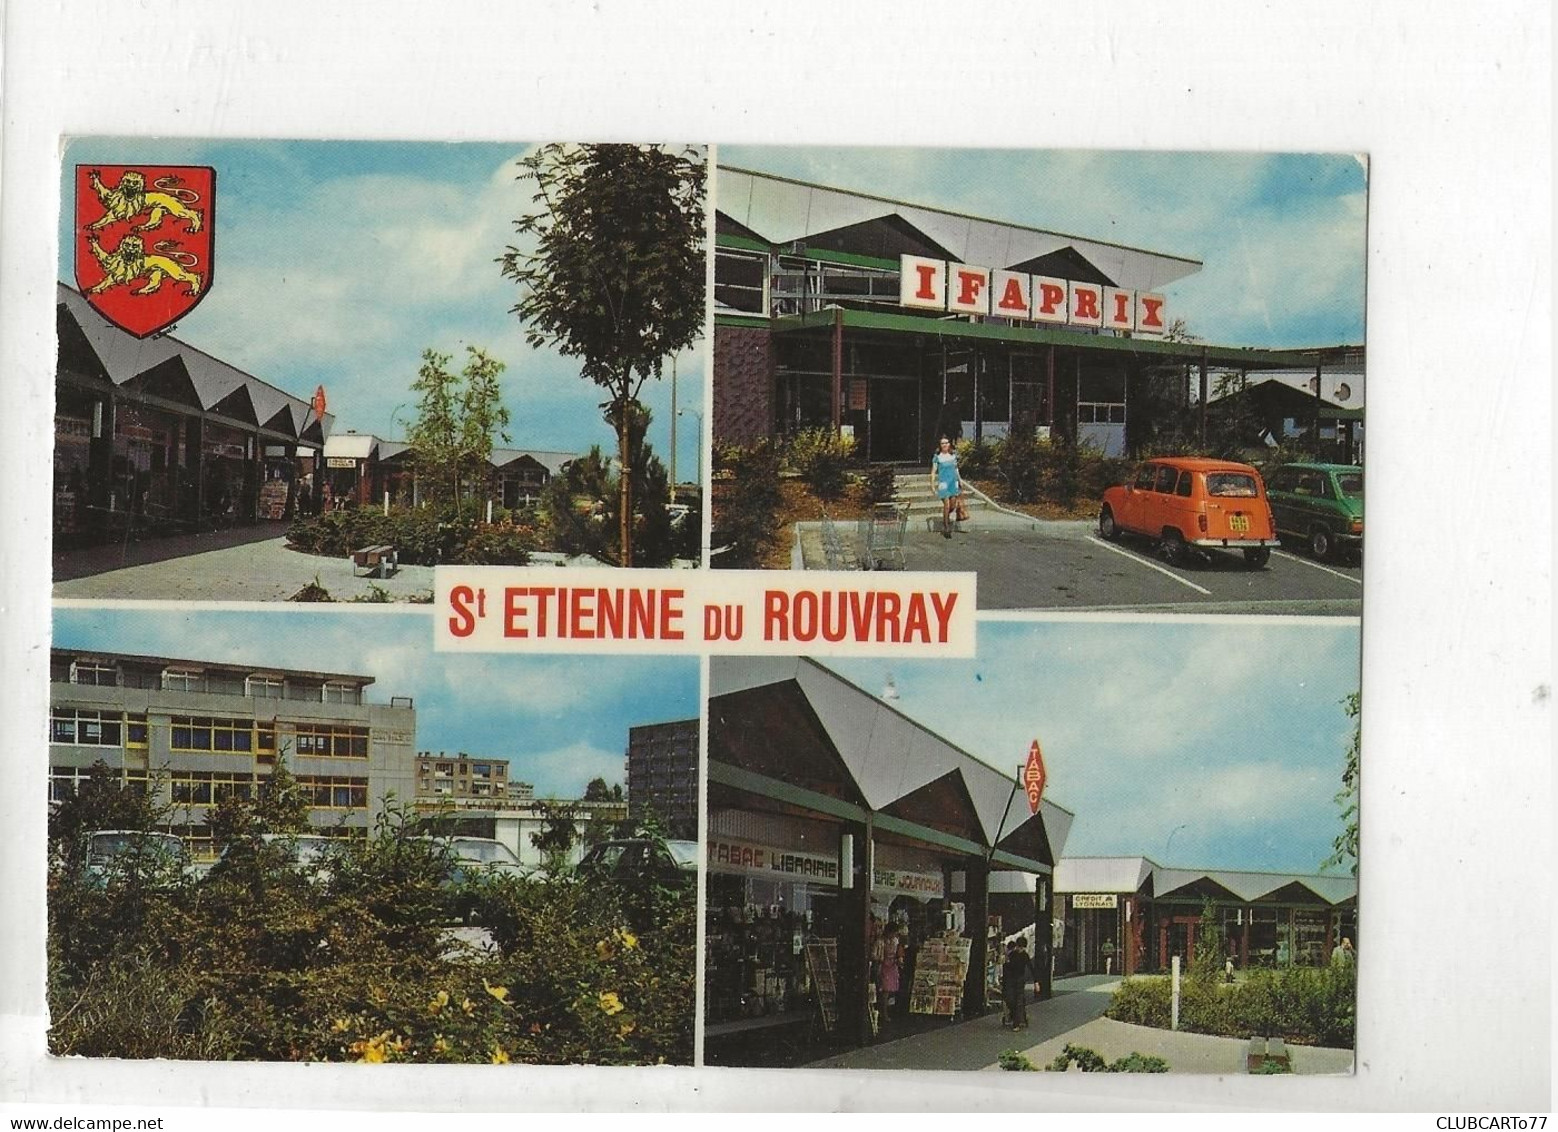 Saint-Étienne-du-Rouvray (76) : 4 Vues Du Nouveau Quartier Dont Le Centre Commercial Thiang Et GP Magasin Presse 1987 GF - Saint Etienne Du Rouvray